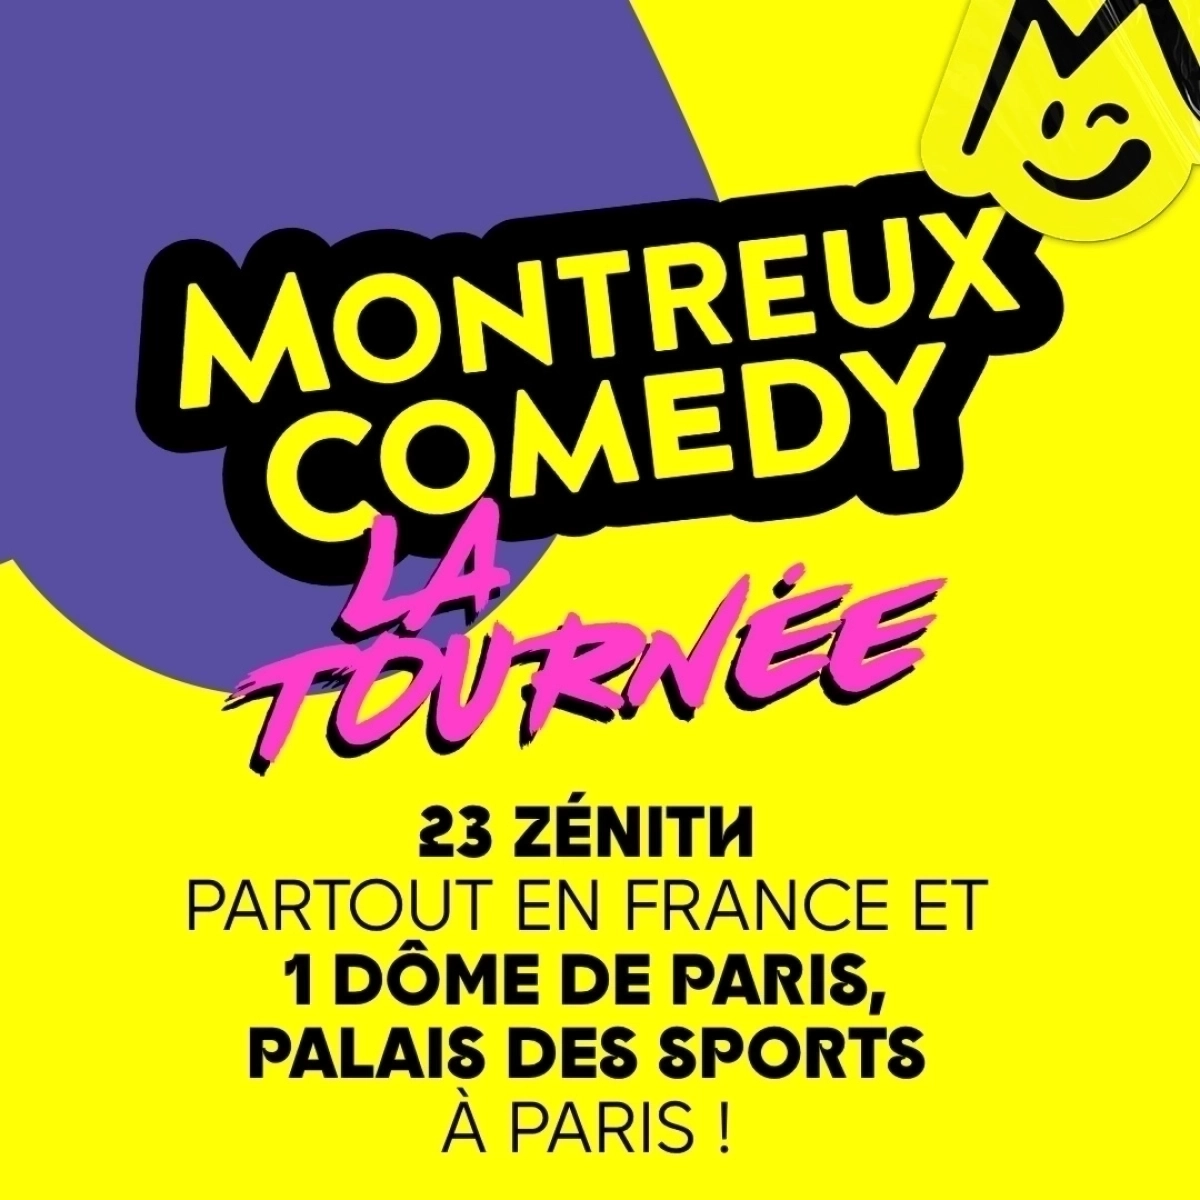 Montreux Comedy - La Tournée at Halle Tony Garnier Tickets